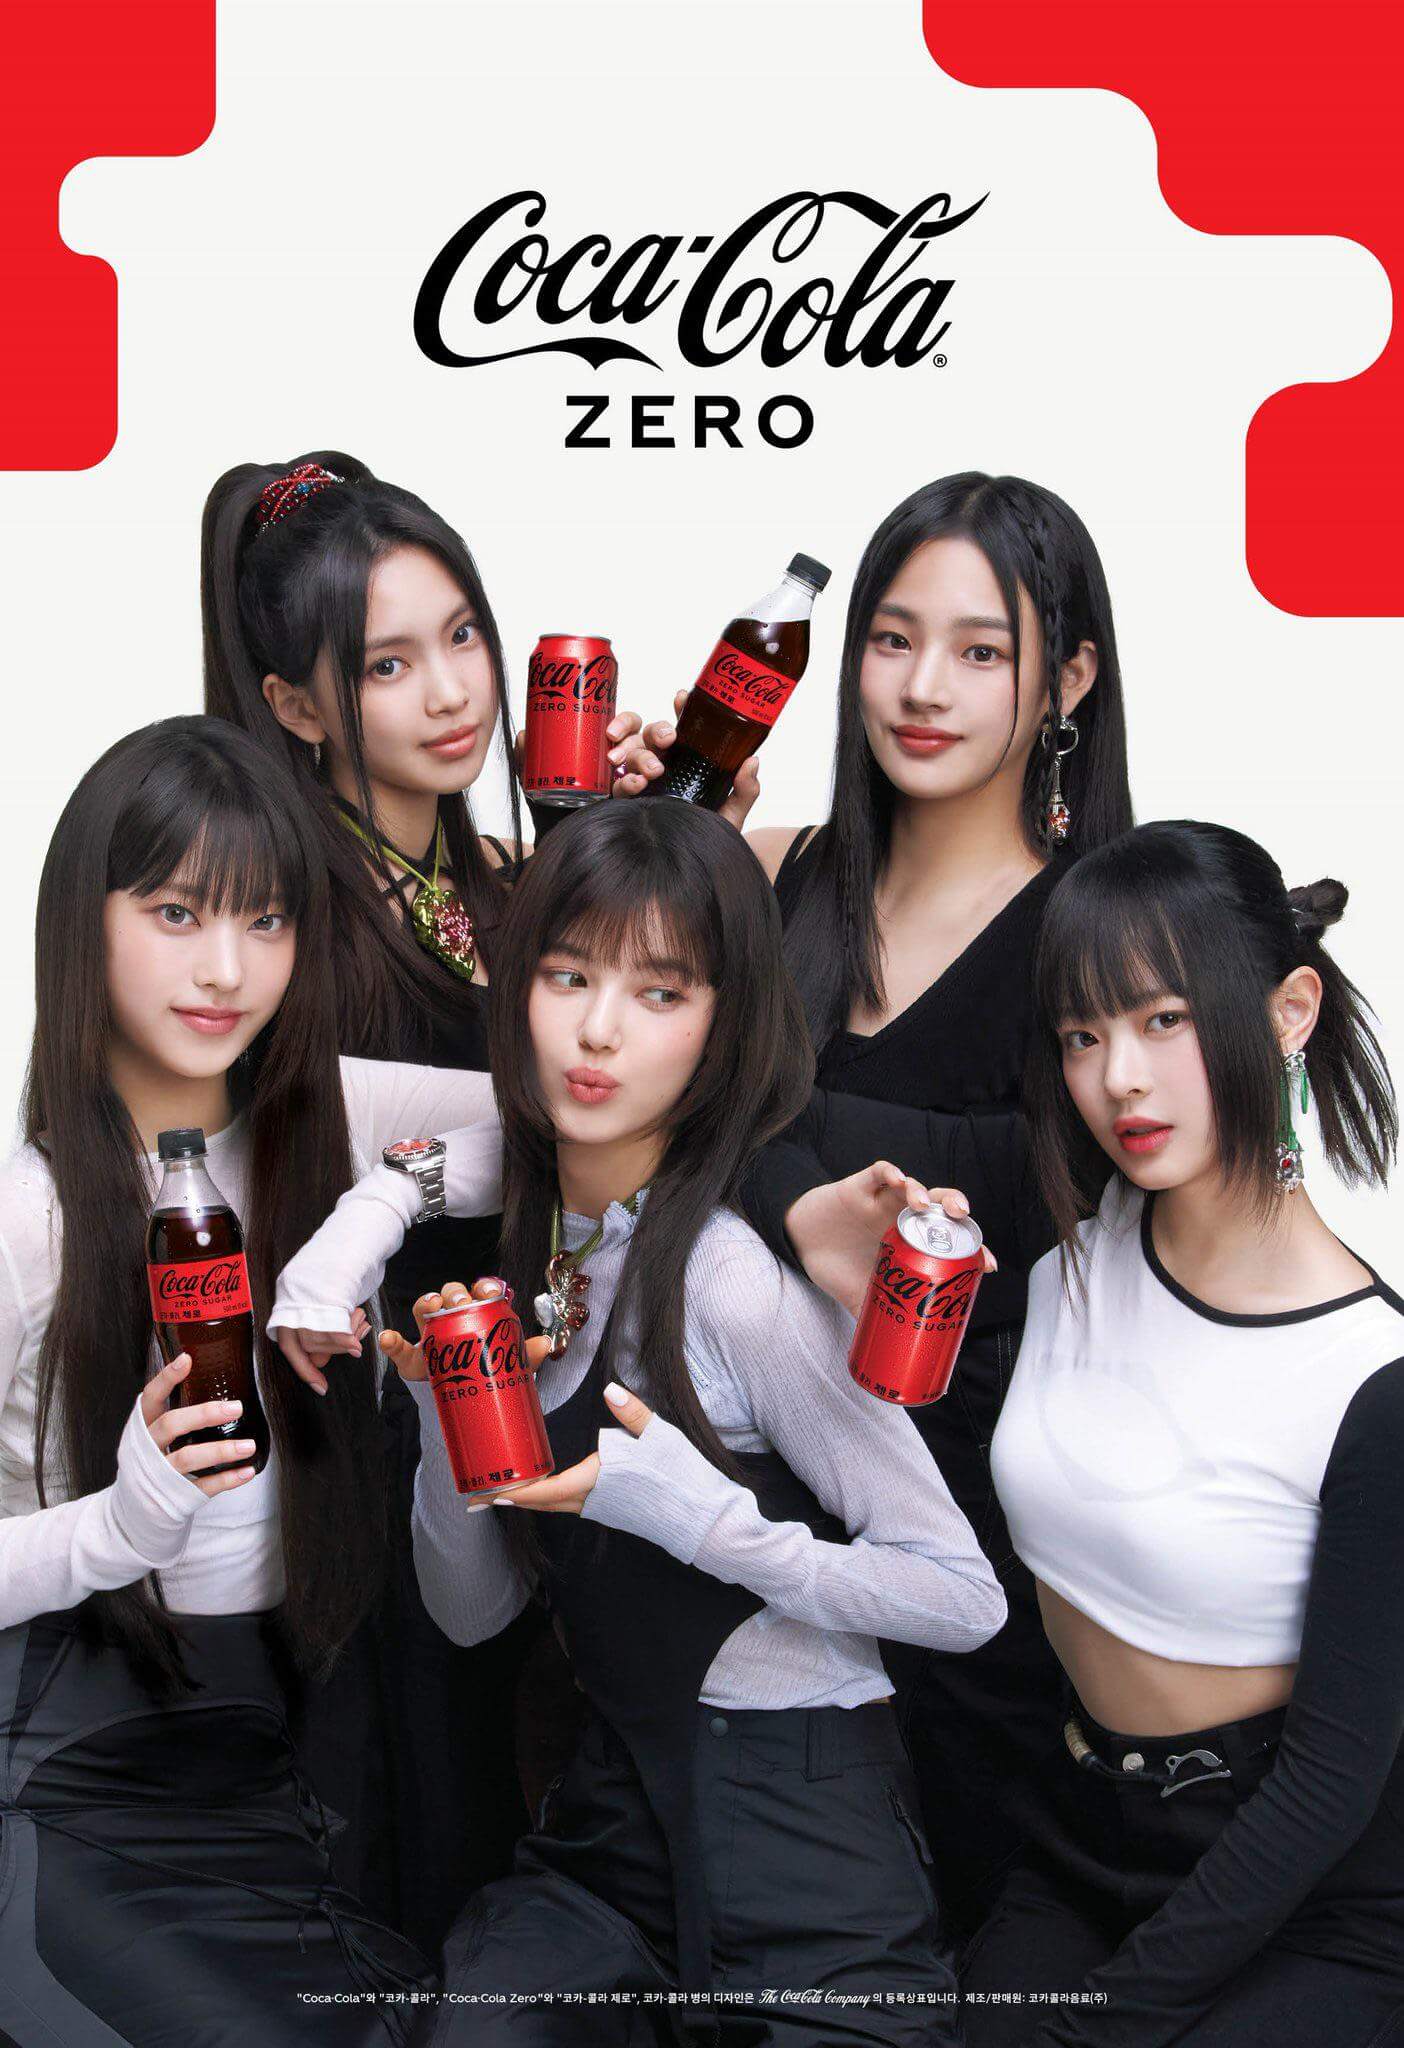 NewJeans mirando a cámara y sujetando botellas de Coca-Cola Zero